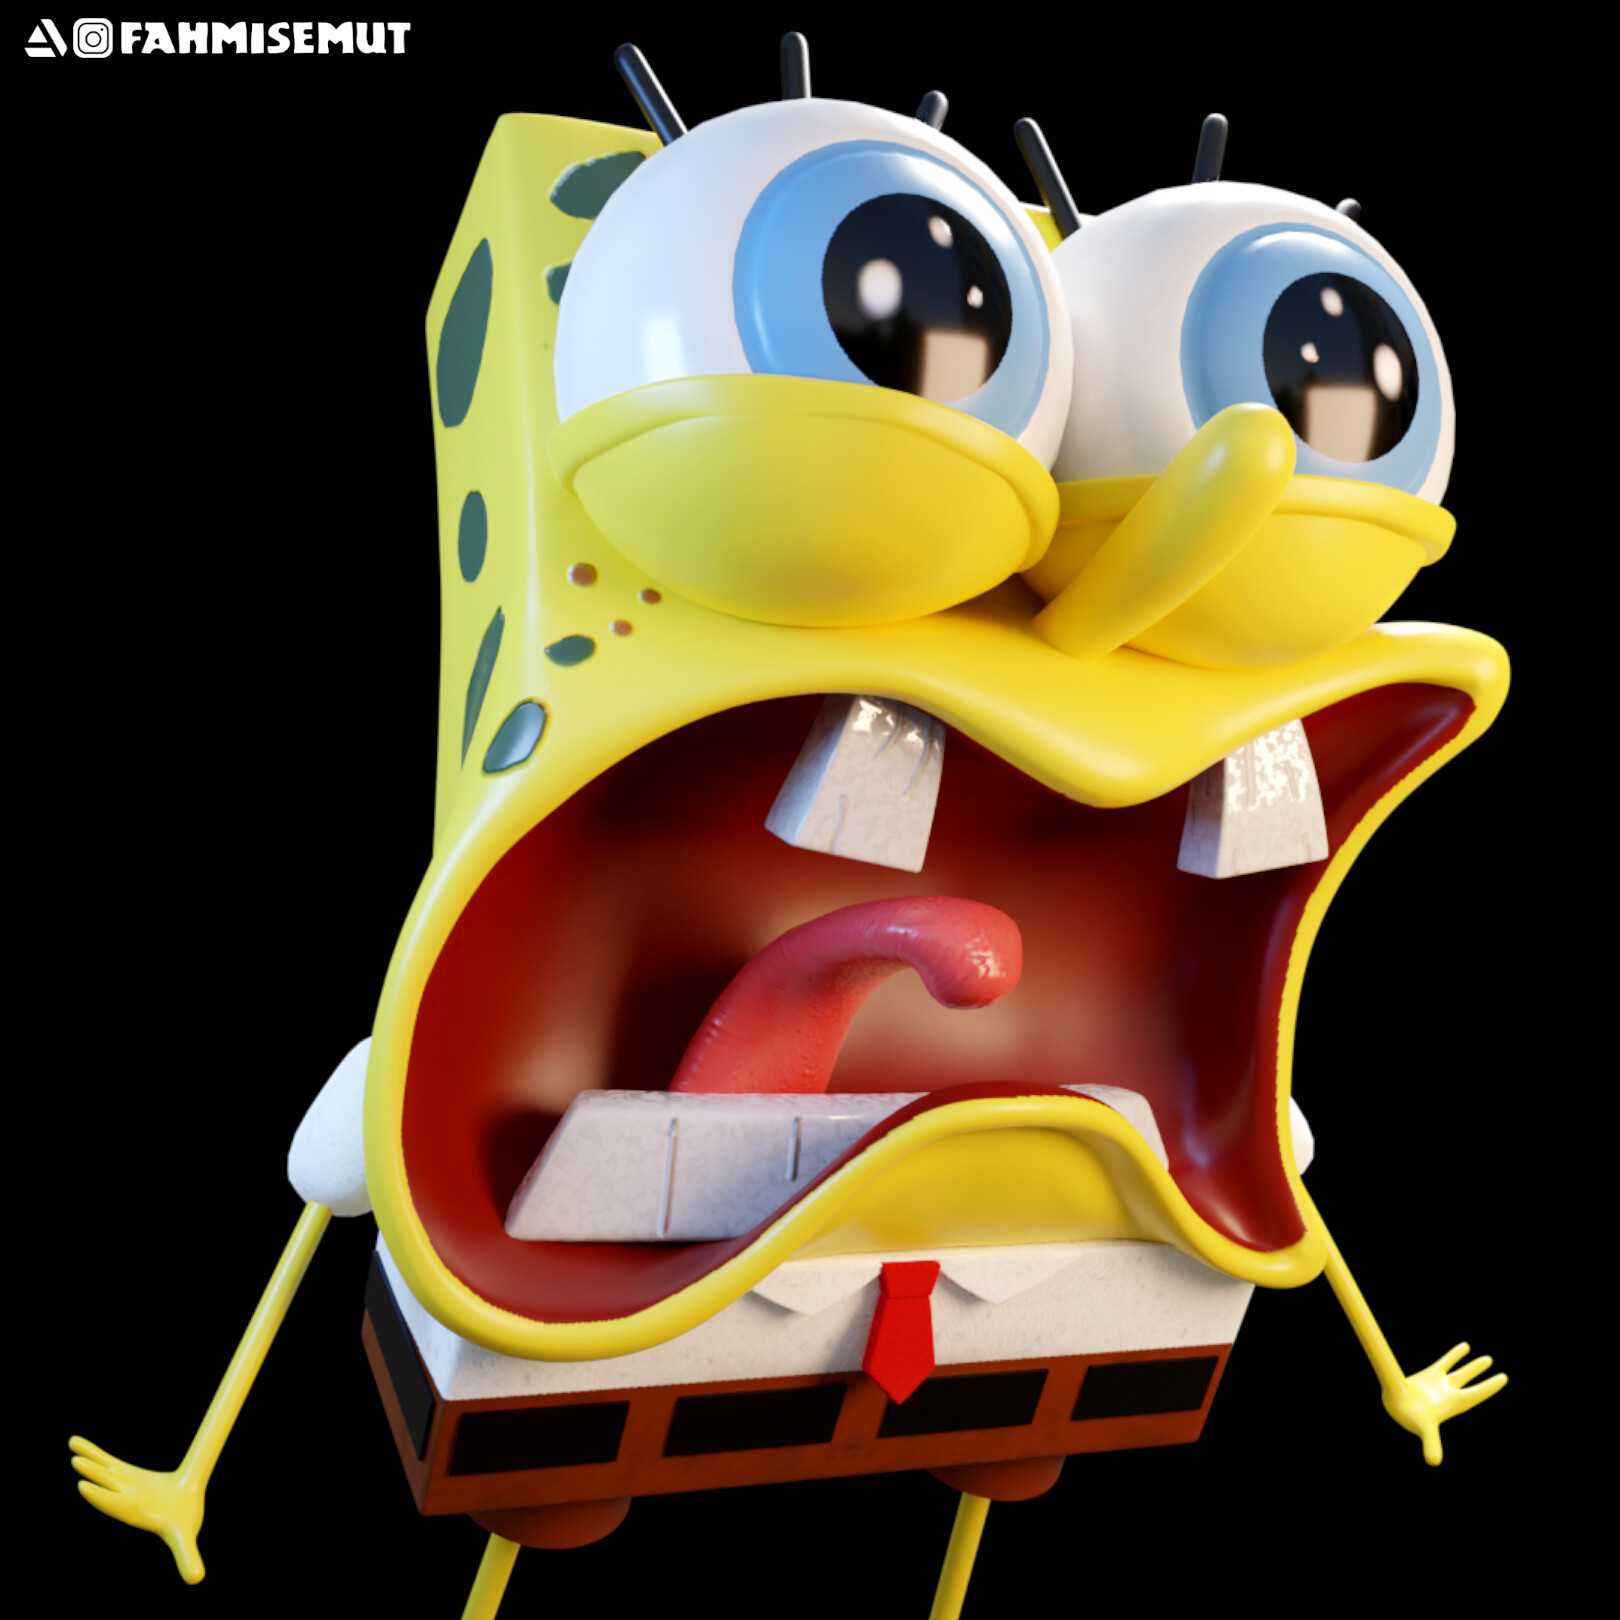 Gangsta Spongebob Fan Art By Zilly666 On Deviantart - vrogue.co